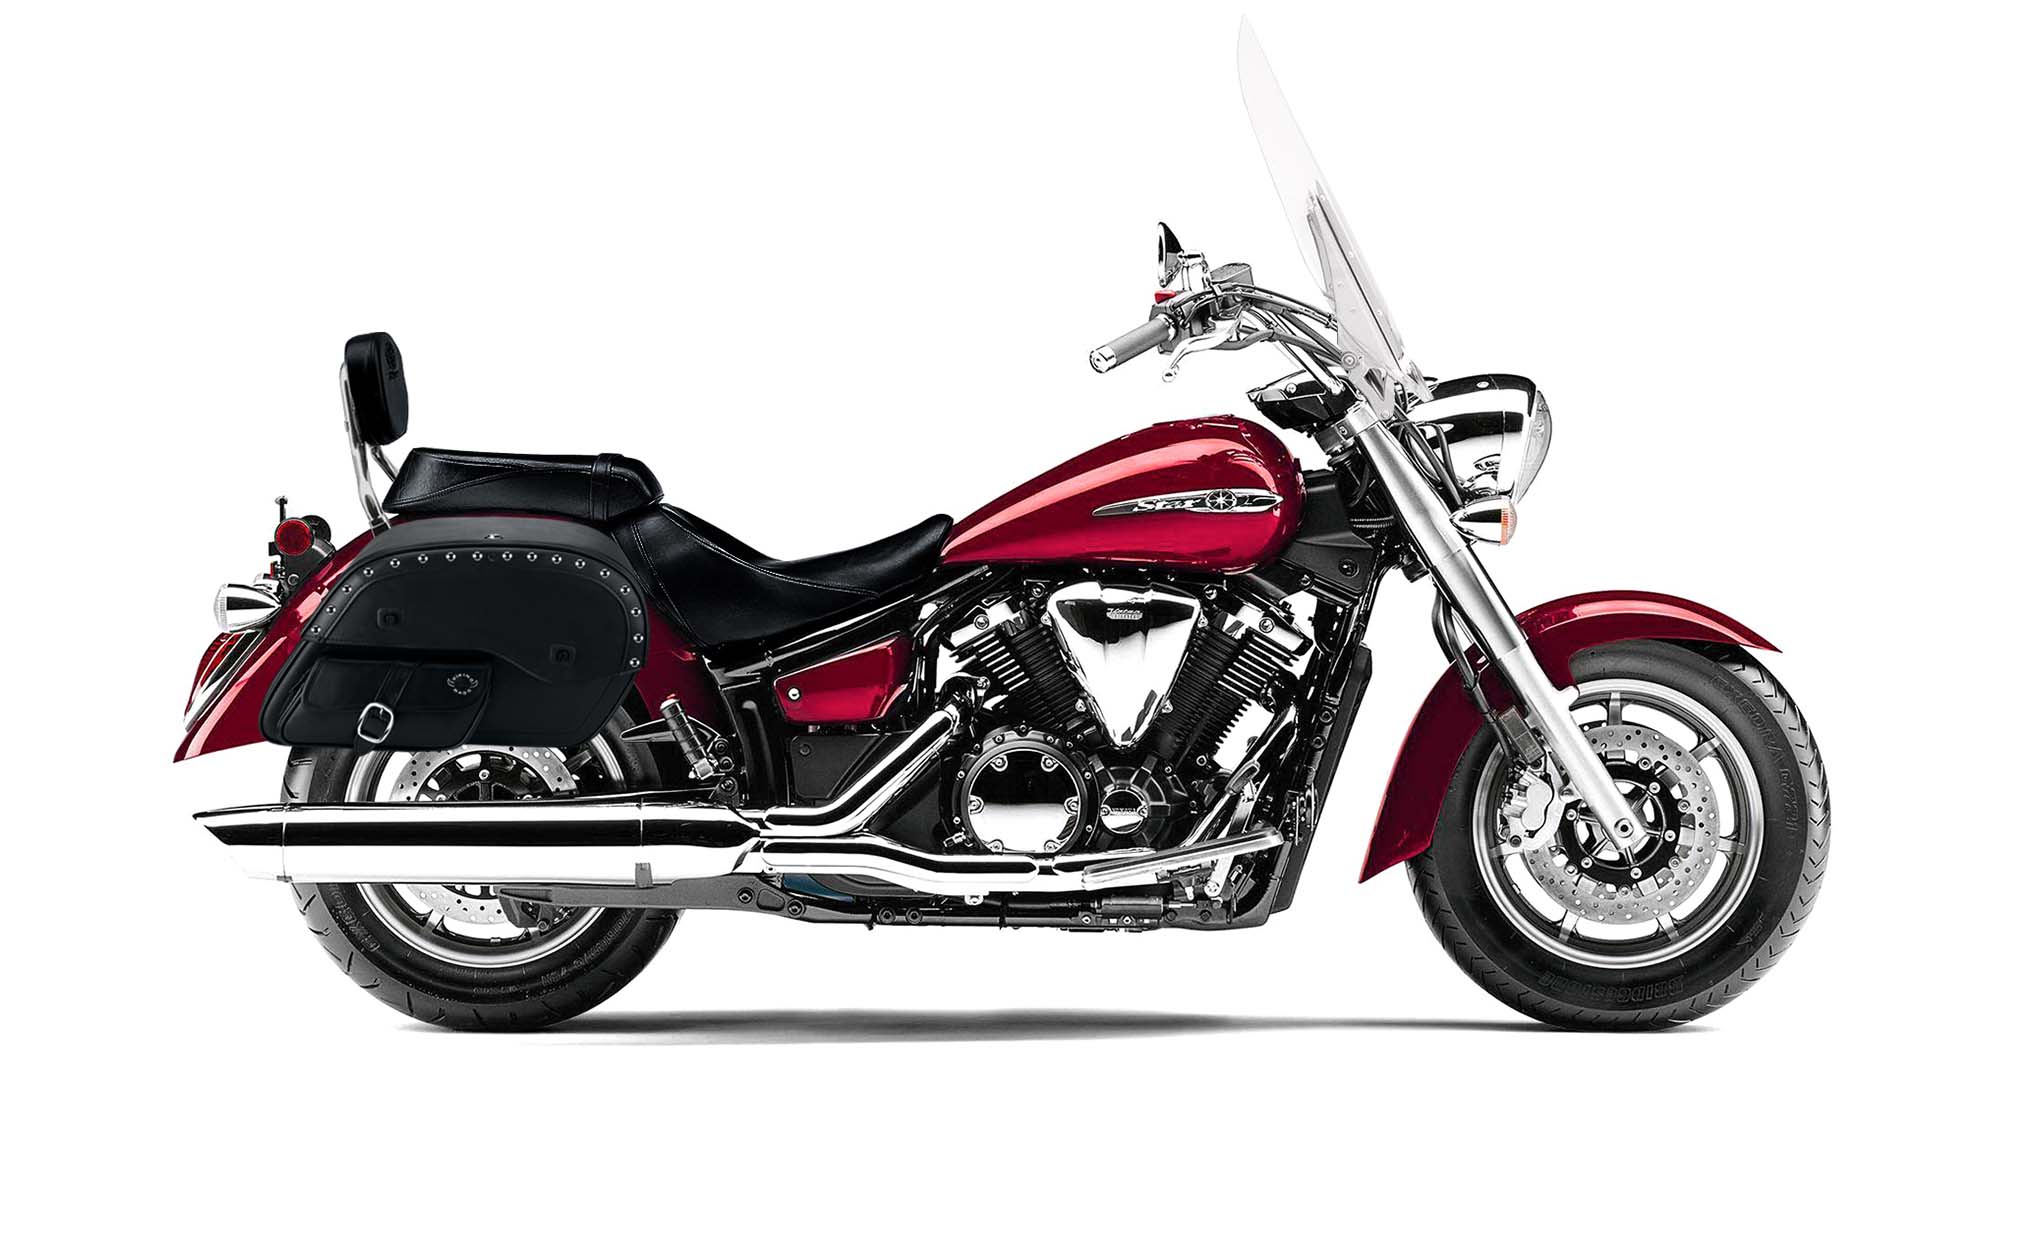 Viking Side Pocket Large Studded Yamaha V Star 1300 Tourer Leather Motorcycle Saddlebags on Bike Photo @expand